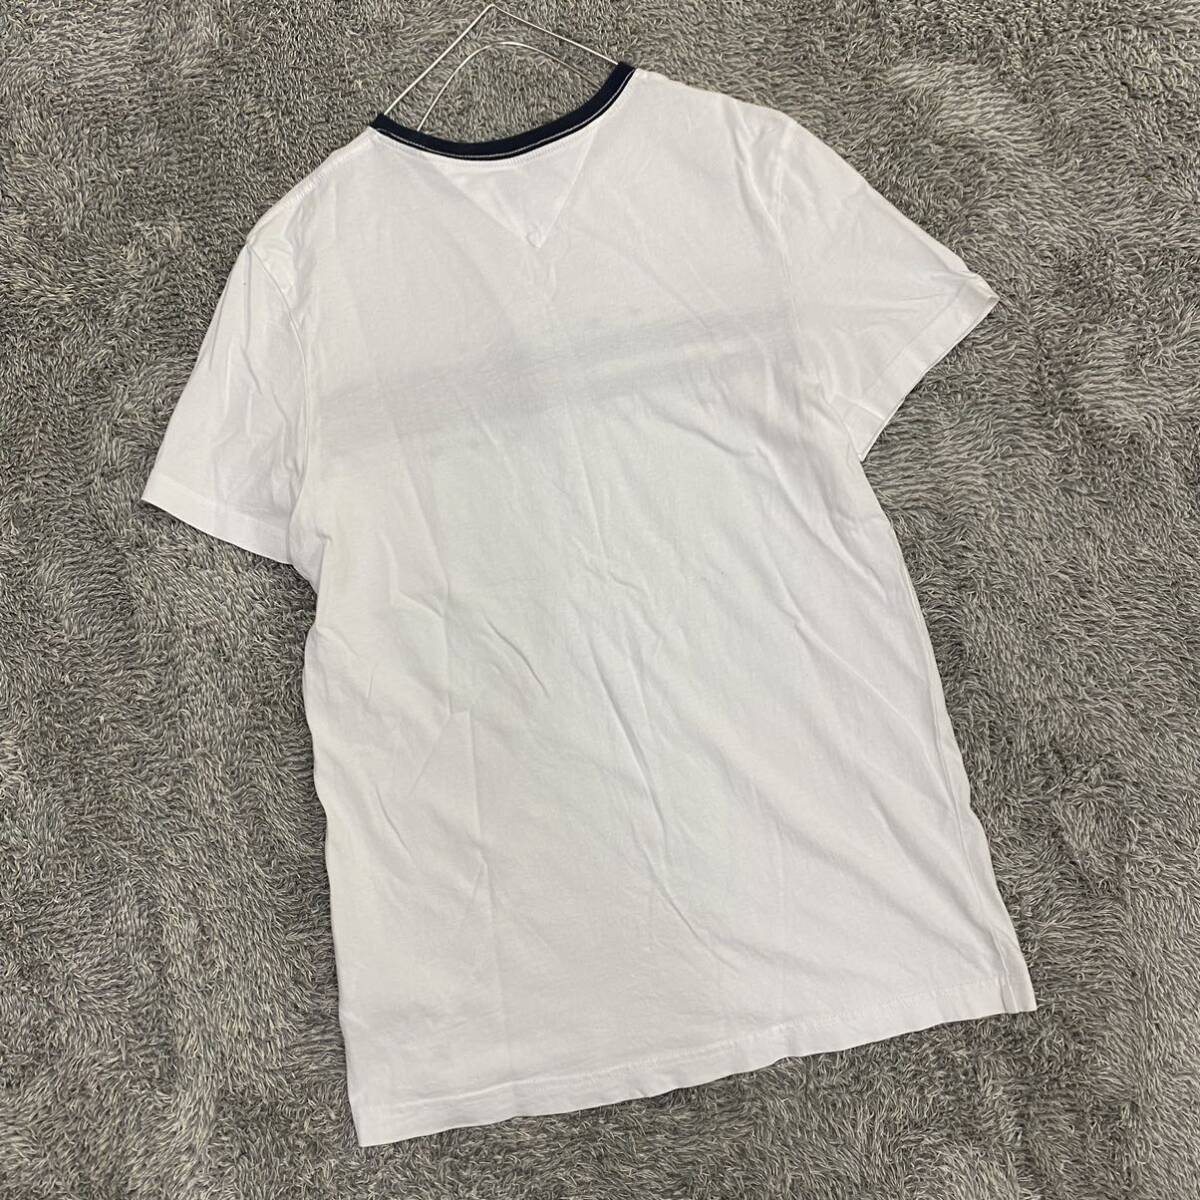 TOMMY HILFIGER トミーヒルフィガー Tシャツ 半袖カットソー サイズS ホワイト 白 メンズ トップス 最落なし （U18）の画像2